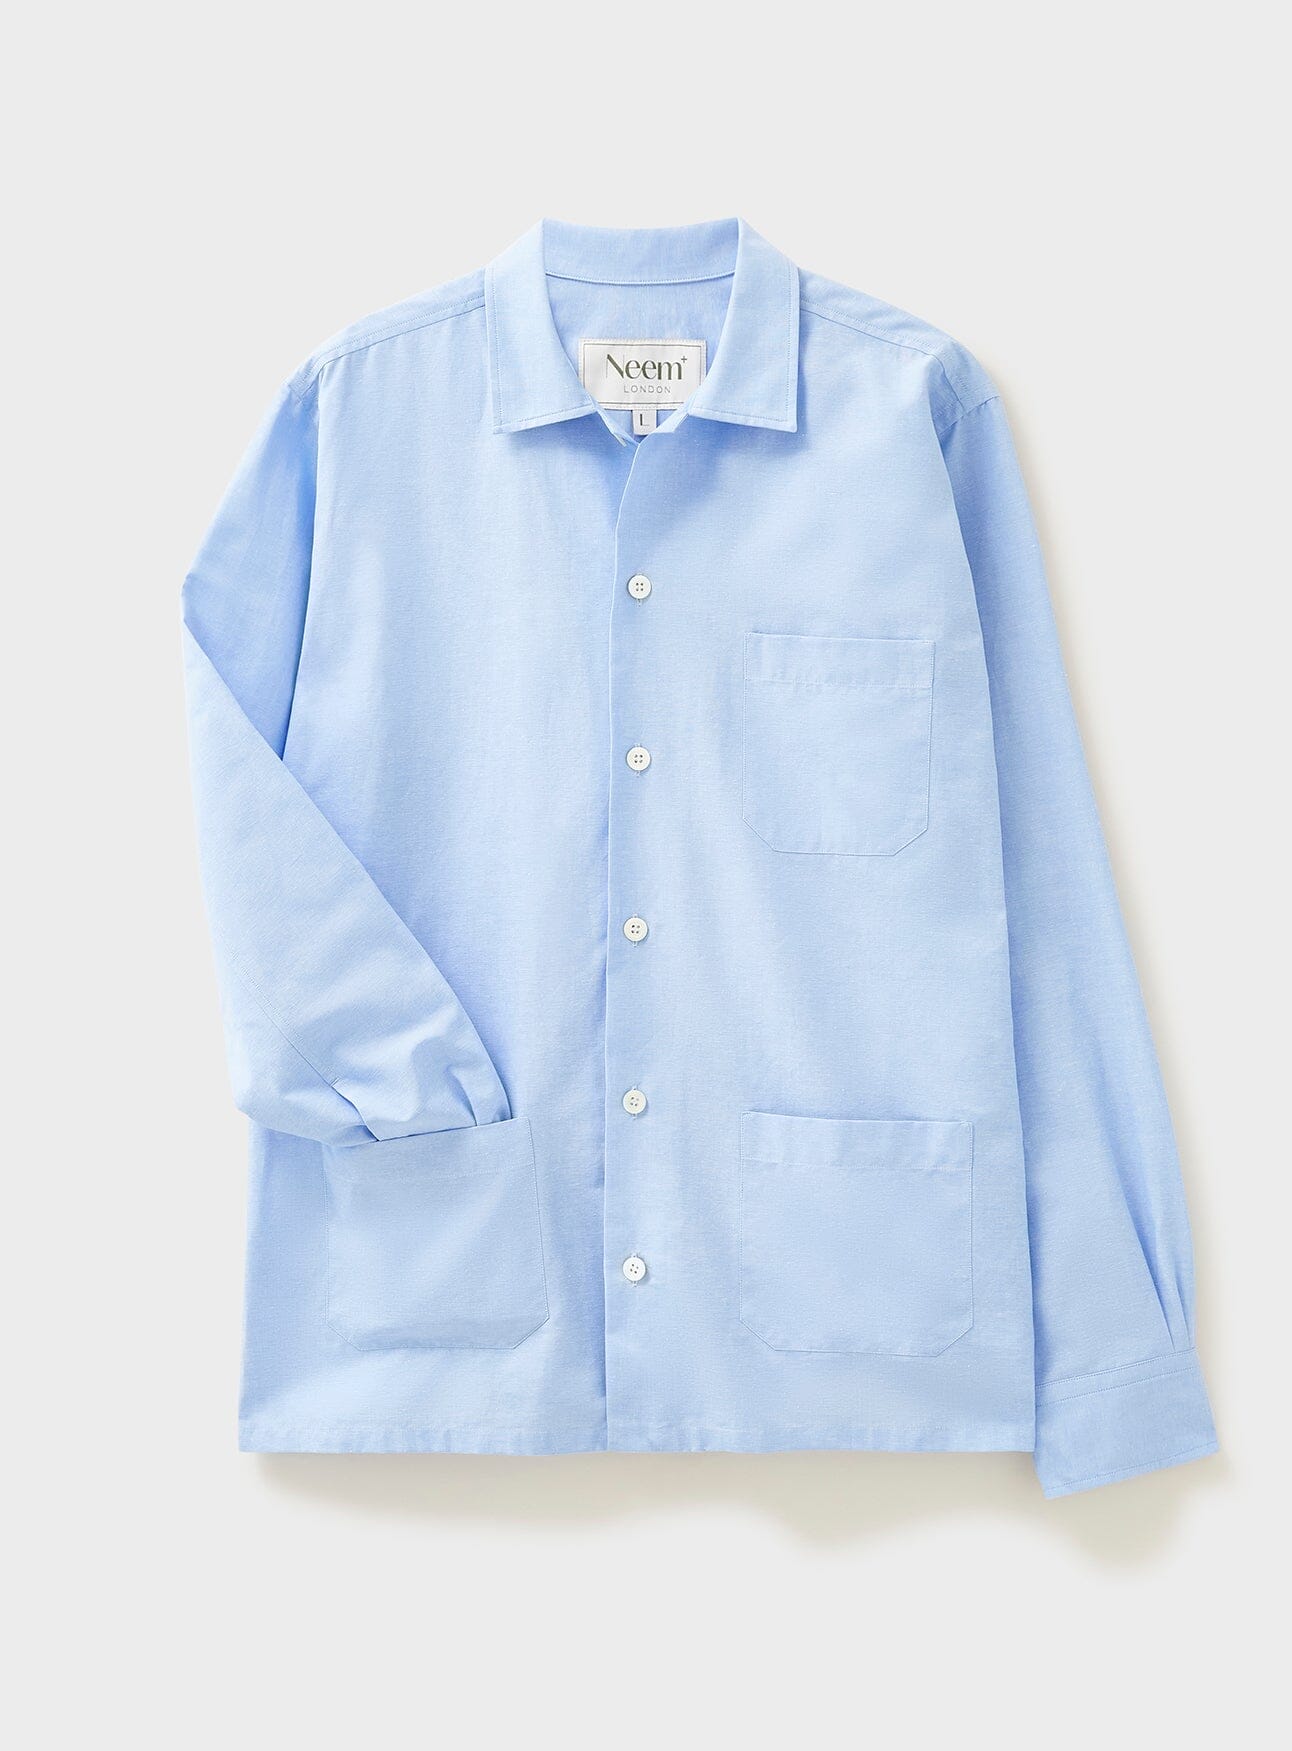 sustainable clothing, blue shirt